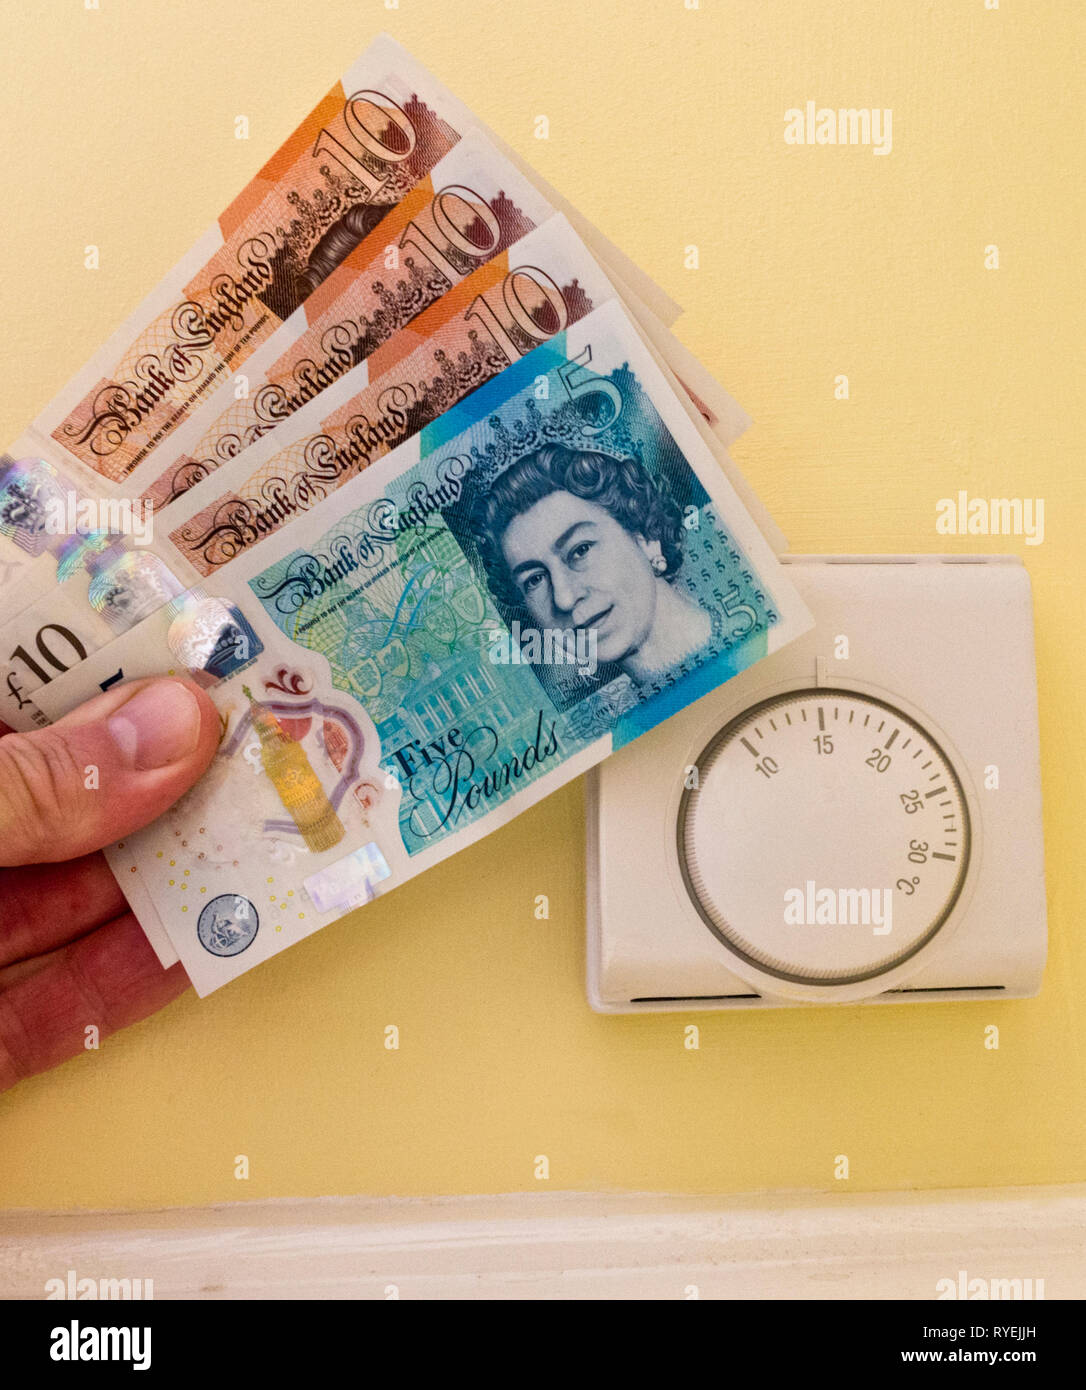 Honeywell Zentralheizung Raumthermostat mit des Menschen Hand Pfundnoten Geld für Heizkosten, Großbritannien Stockfoto